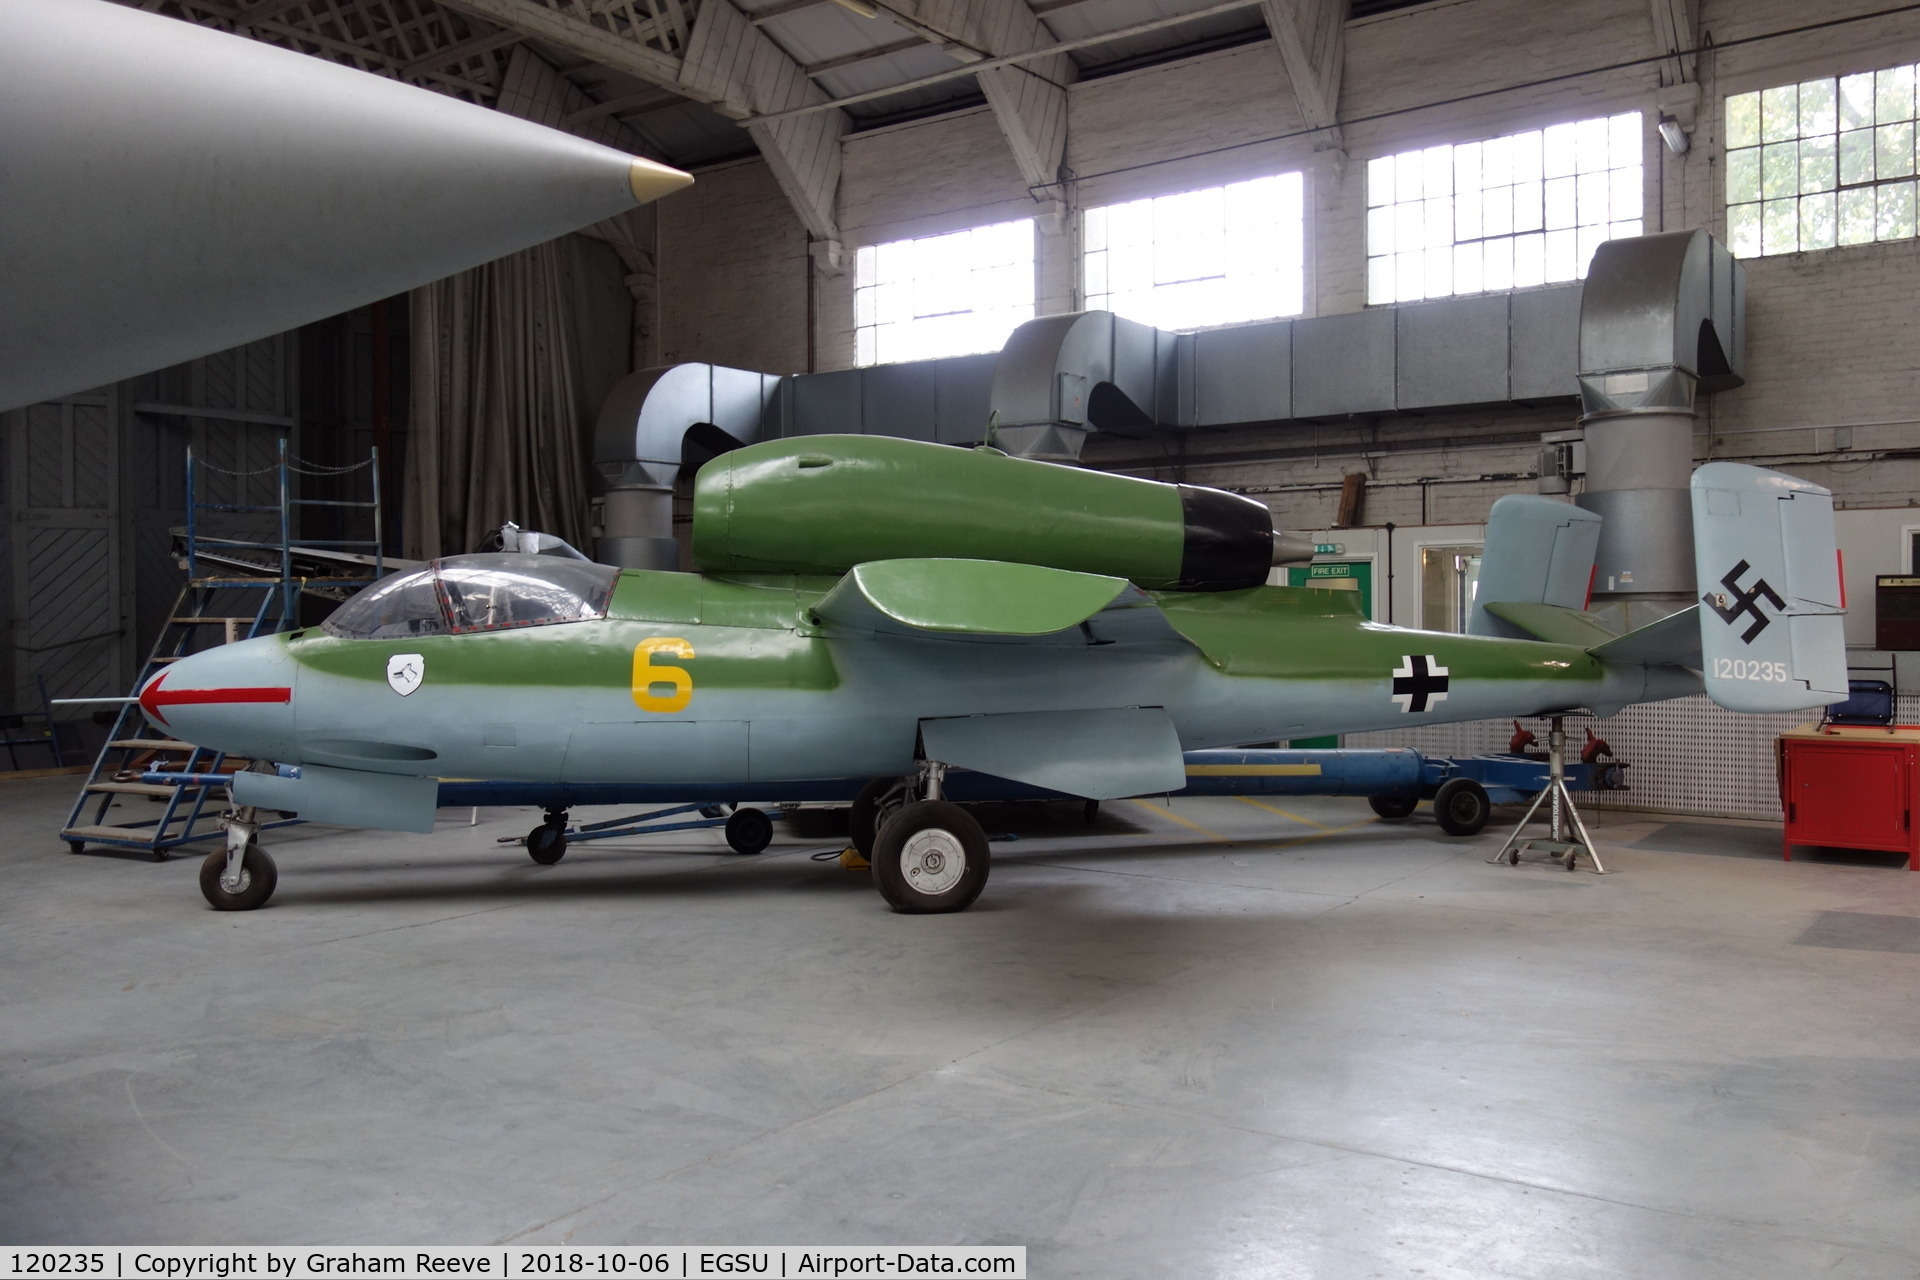 120235, Heinkel He-162A-1 Volksjager C/N 120235, On display at Duxford.